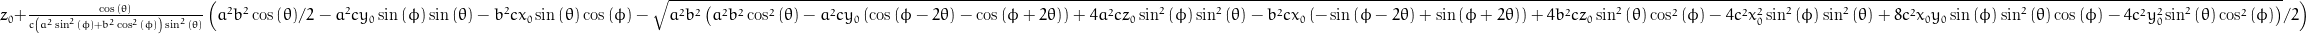 z_{0} + \frac{\cos{\left (\theta \right )}}{c \left(a^{2} \sin^{2}{\left (\phi \right )} + b^{2} \cos^{2}{\left (\phi \right )}\right) \sin^{2}{\left (\theta \right )}} \left(\frac{a^{2} b^{2}}{2} \cos{\left (\theta \right )} - a^{2} c y_{0} \sin{\left (\phi \right )} \sin{\left (\theta \right )} - b^{2} c x_{0} \sin{\left (\theta \right )} \cos{\left (\phi \right )} - \frac{1}{2} \sqrt{a^{2} b^{2} \left(a^{2} b^{2} \cos^{2}{\left (\theta \right )} - a^{2} c y_{0} \left(\cos{\left (\phi - 2 \theta \right )} - \cos{\left (\phi + 2 \theta \right )}\right) + 4 a^{2} c z_{0} \sin^{2}{\left (\phi \right )} \sin^{2}{\left (\theta \right )} - b^{2} c x_{0} \left(- \sin{\left (\phi - 2 \theta \right )} + \sin{\left (\phi + 2 \theta \right )}\right) + 4 b^{2} c z_{0} \sin^{2}{\left (\theta \right )} \cos^{2}{\left (\phi \right )} - 4 c^{2} x_{0}^{2} \sin^{2}{\left (\phi \right )} \sin^{2}{\left (\theta \right )} + 8 c^{2} x_{0} y_{0} \sin{\left (\phi \right )} \sin^{2}{\left (\theta \right )} \cos{\left (\phi \right )} - 4 c^{2} y_{0}^{2} \sin^{2}{\left (\theta \right )} \cos^{2}{\left (\phi \right )}\right)}\right)